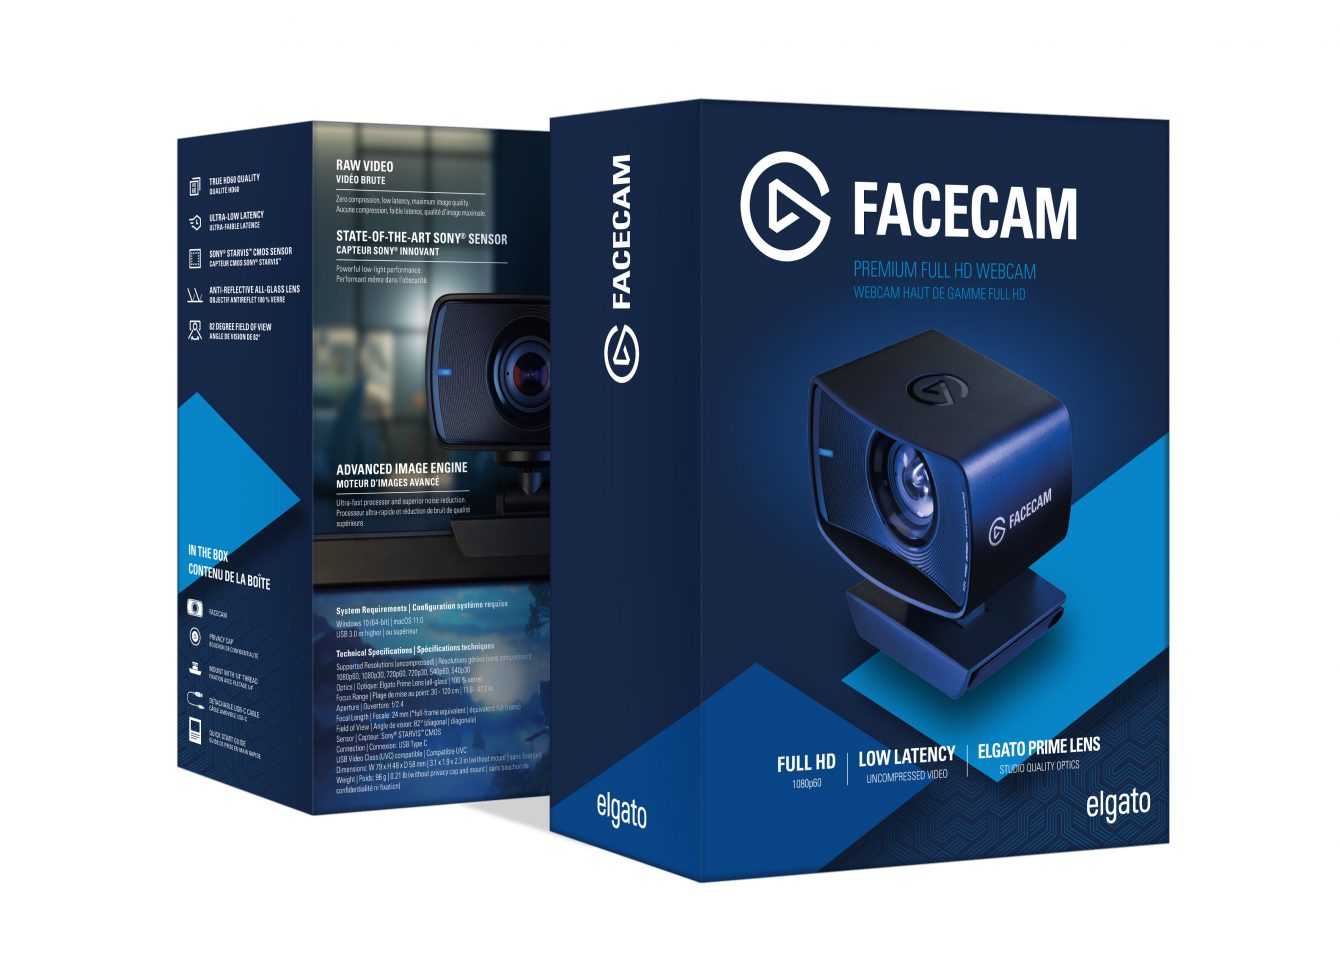 Recensione Elgato FaceCam: non chiamatela webcam